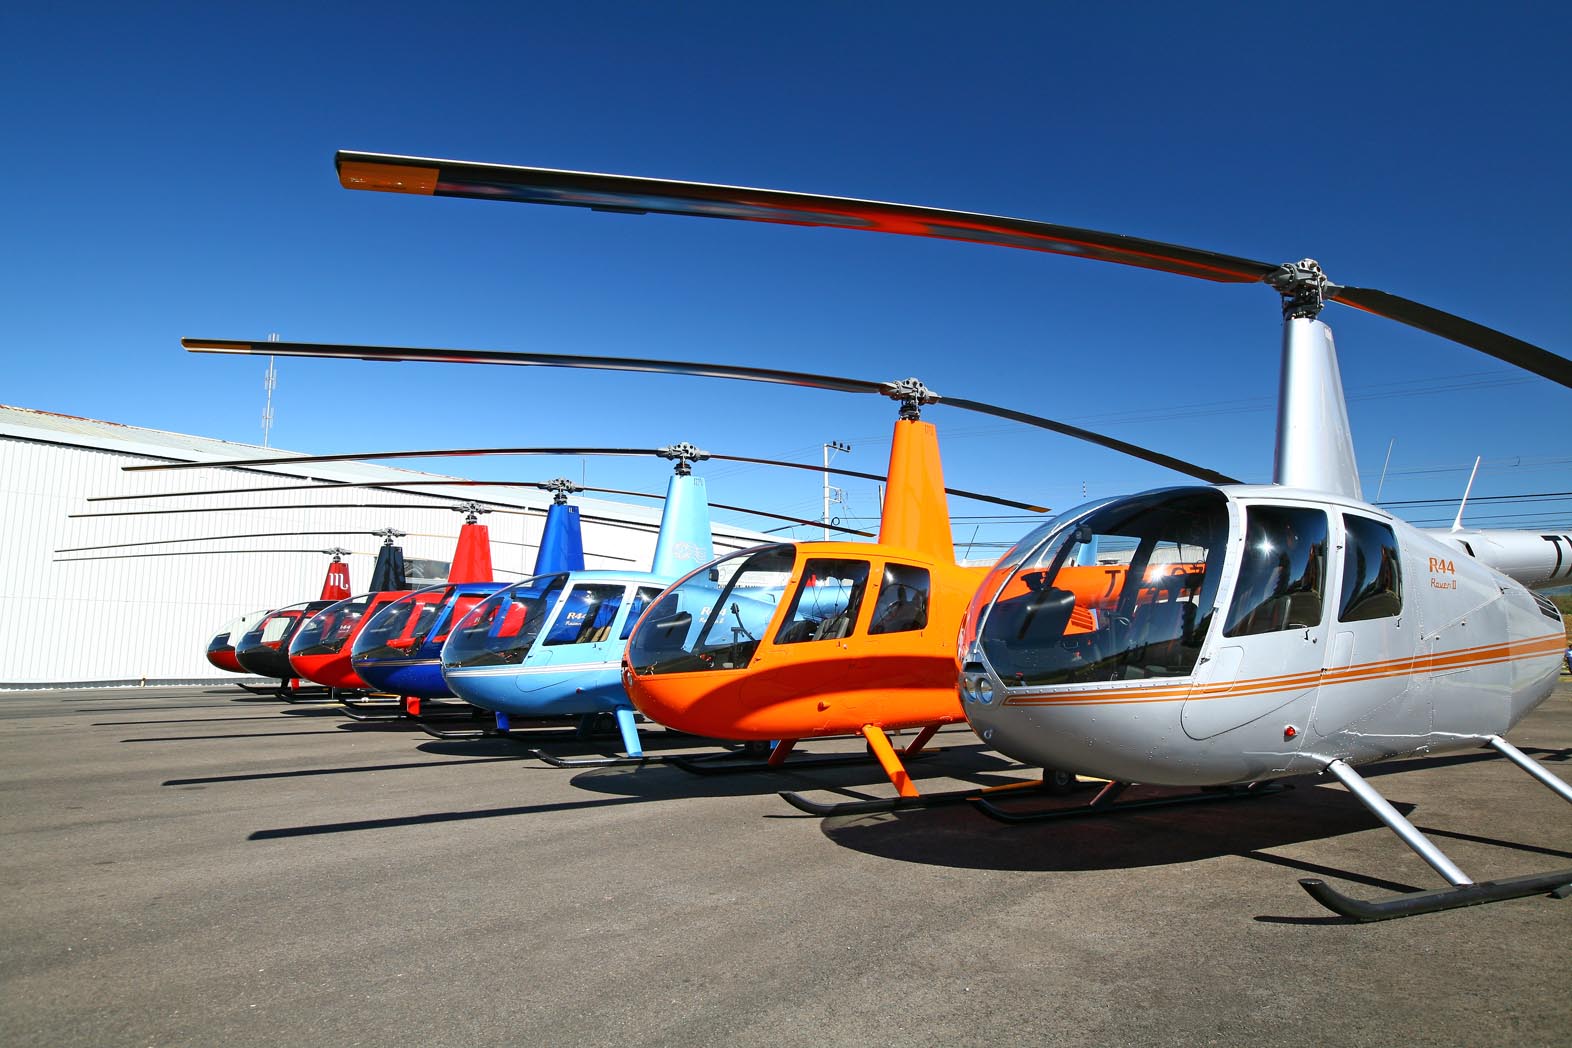 Полет для 1-3 человек на вертолете Robinson R44, аэродром Мячково, Раменский р-он